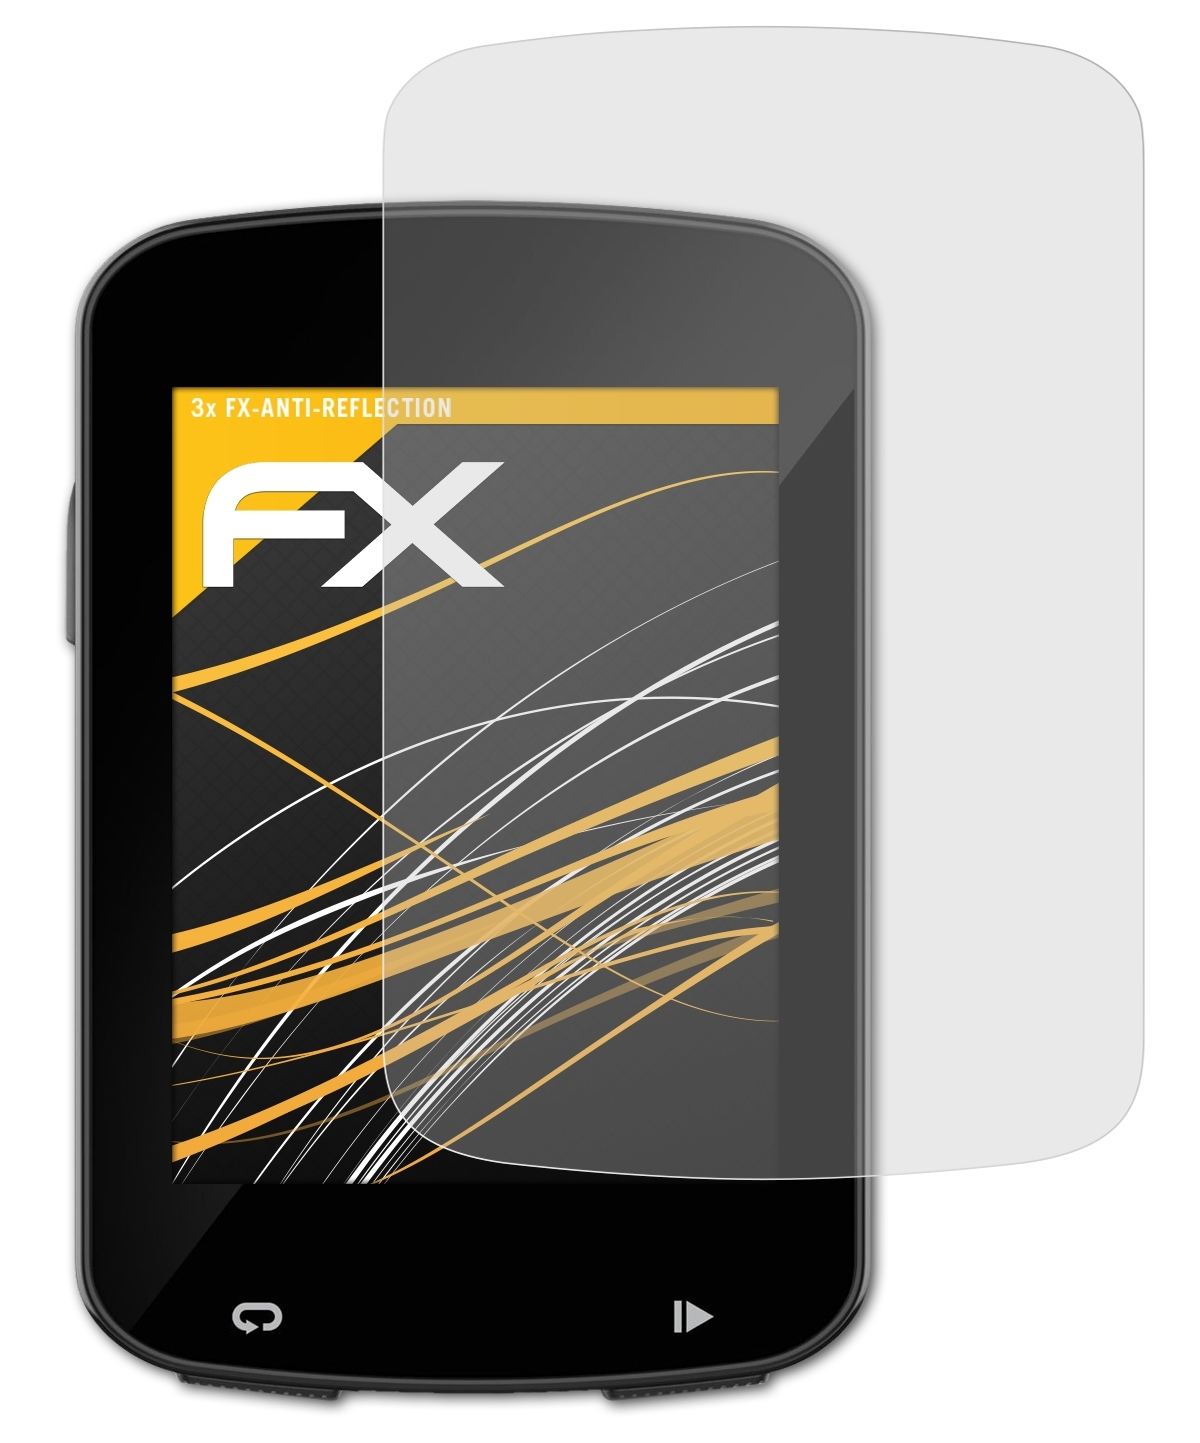 820) 3x FX-Antireflex ATFOLIX / Edge Garmin Explore 820 Displayschutz(für